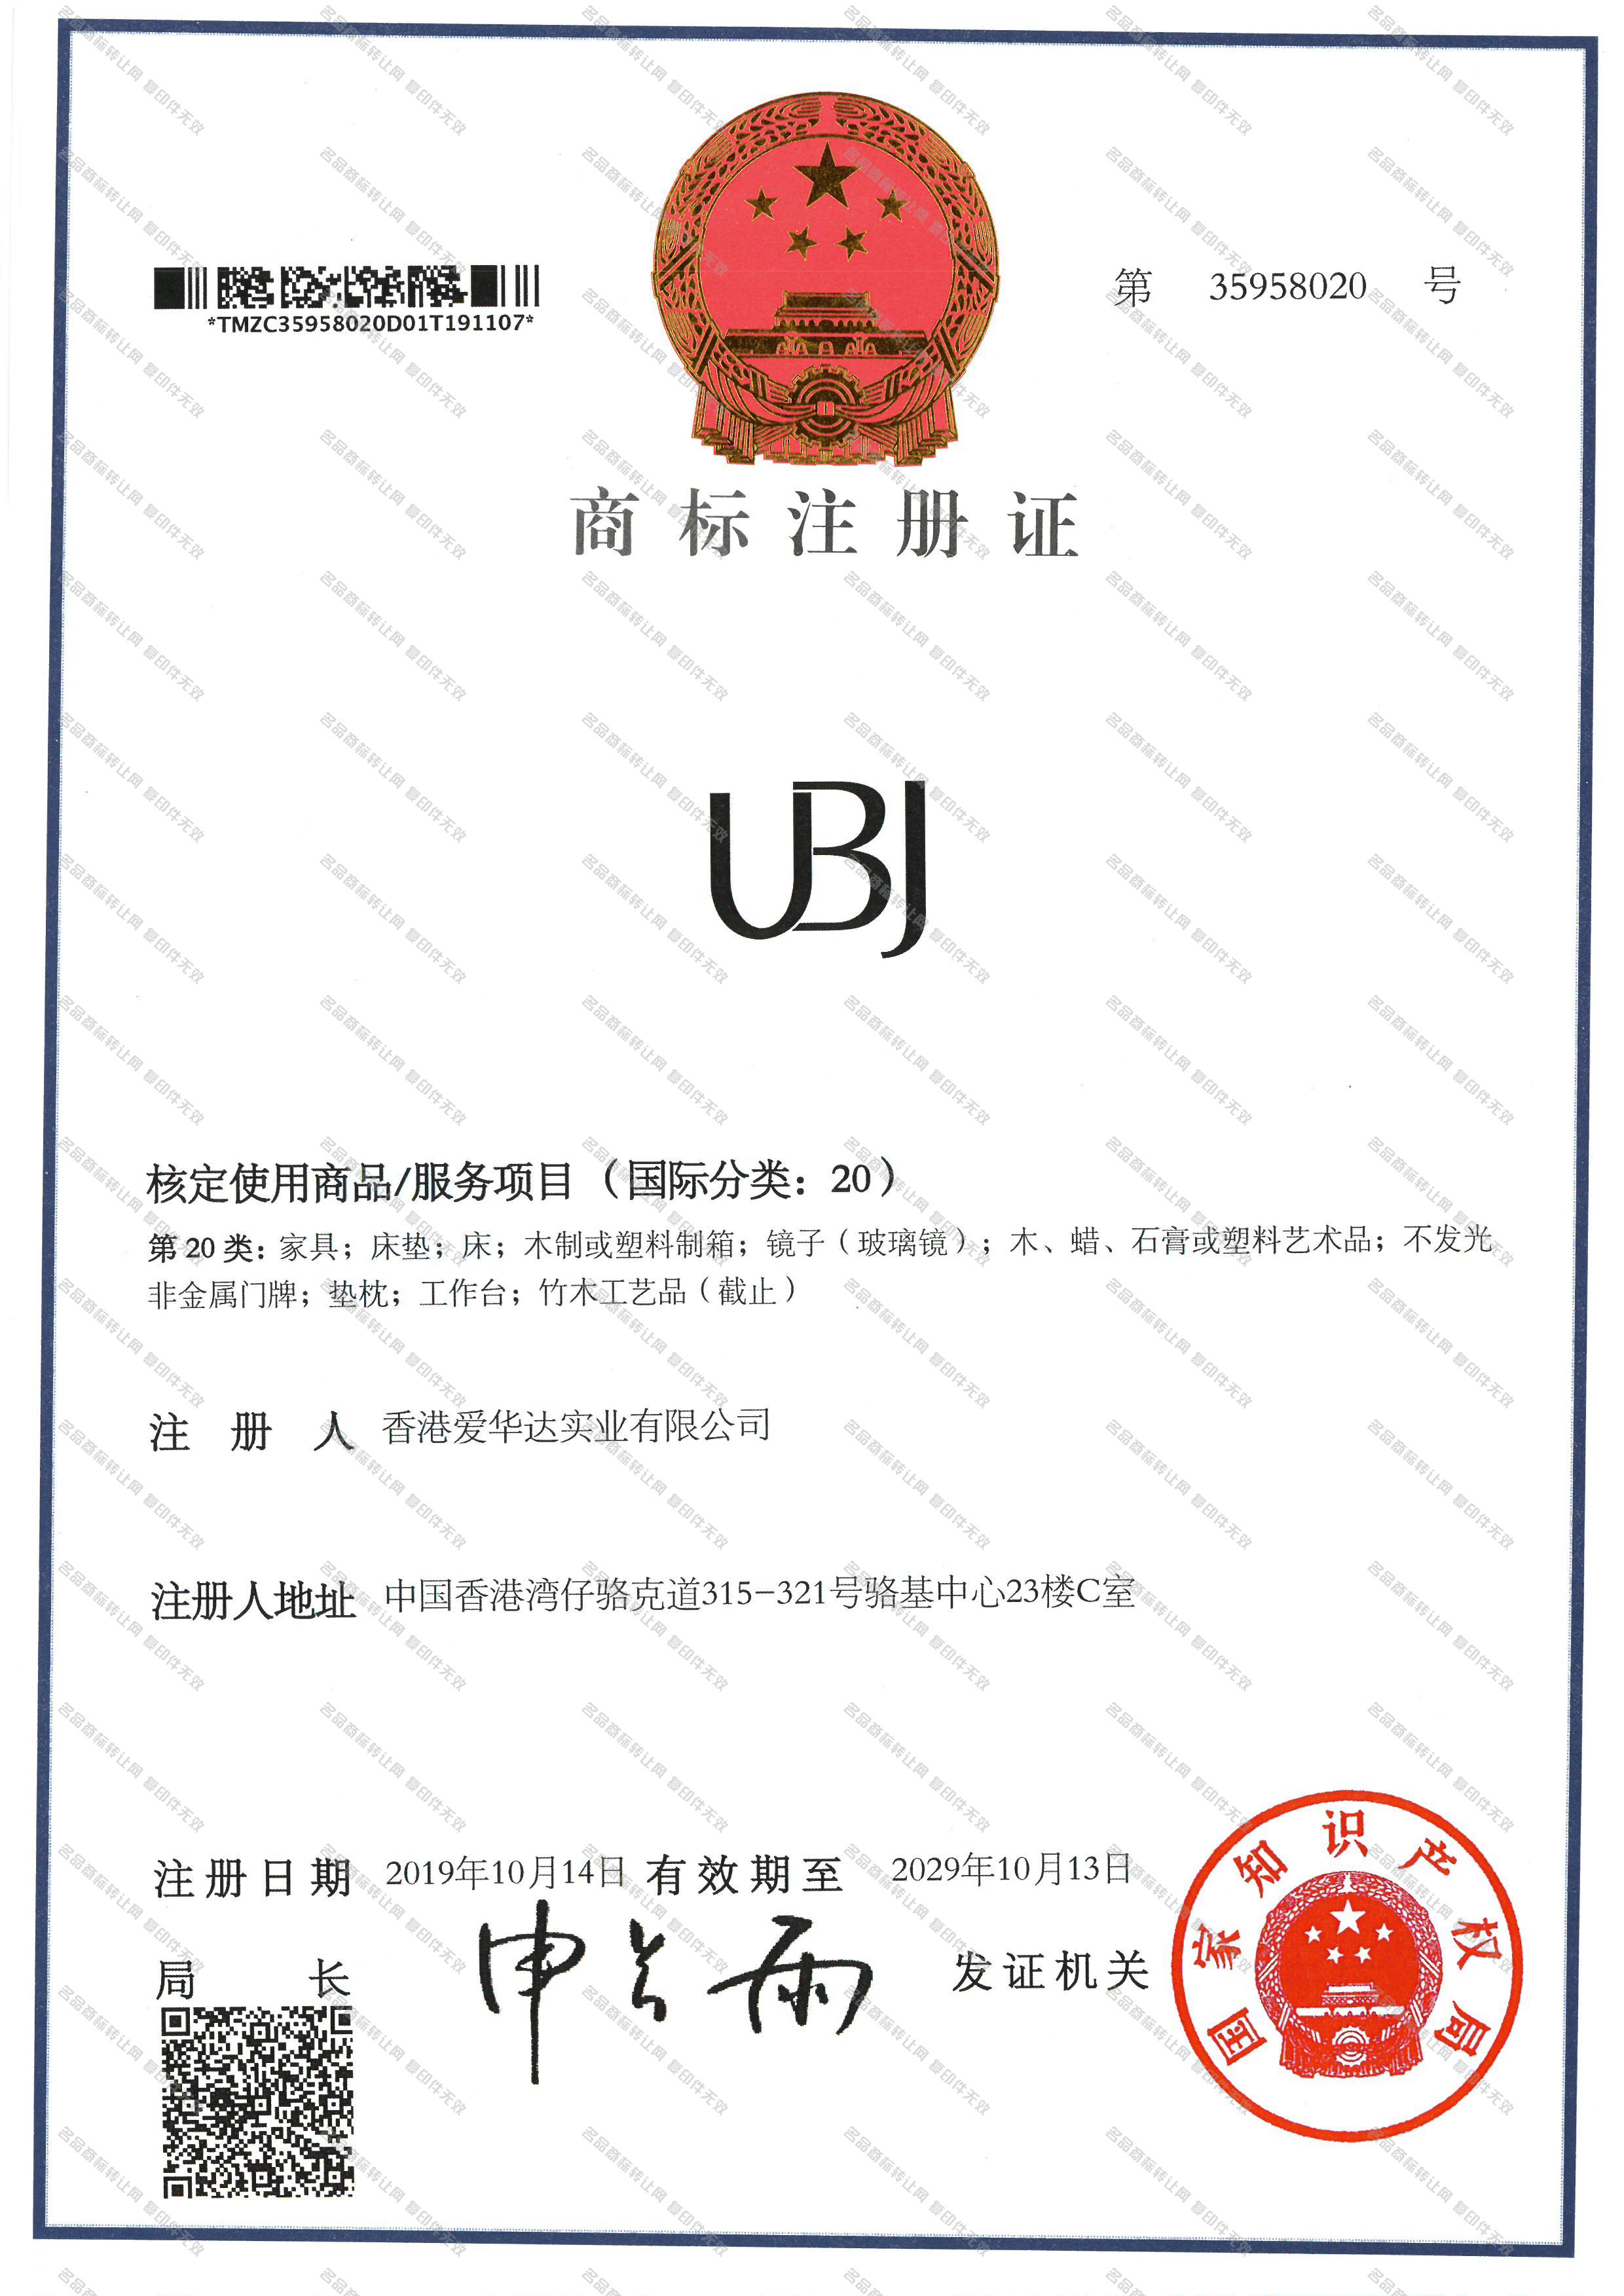 UBJ注册证